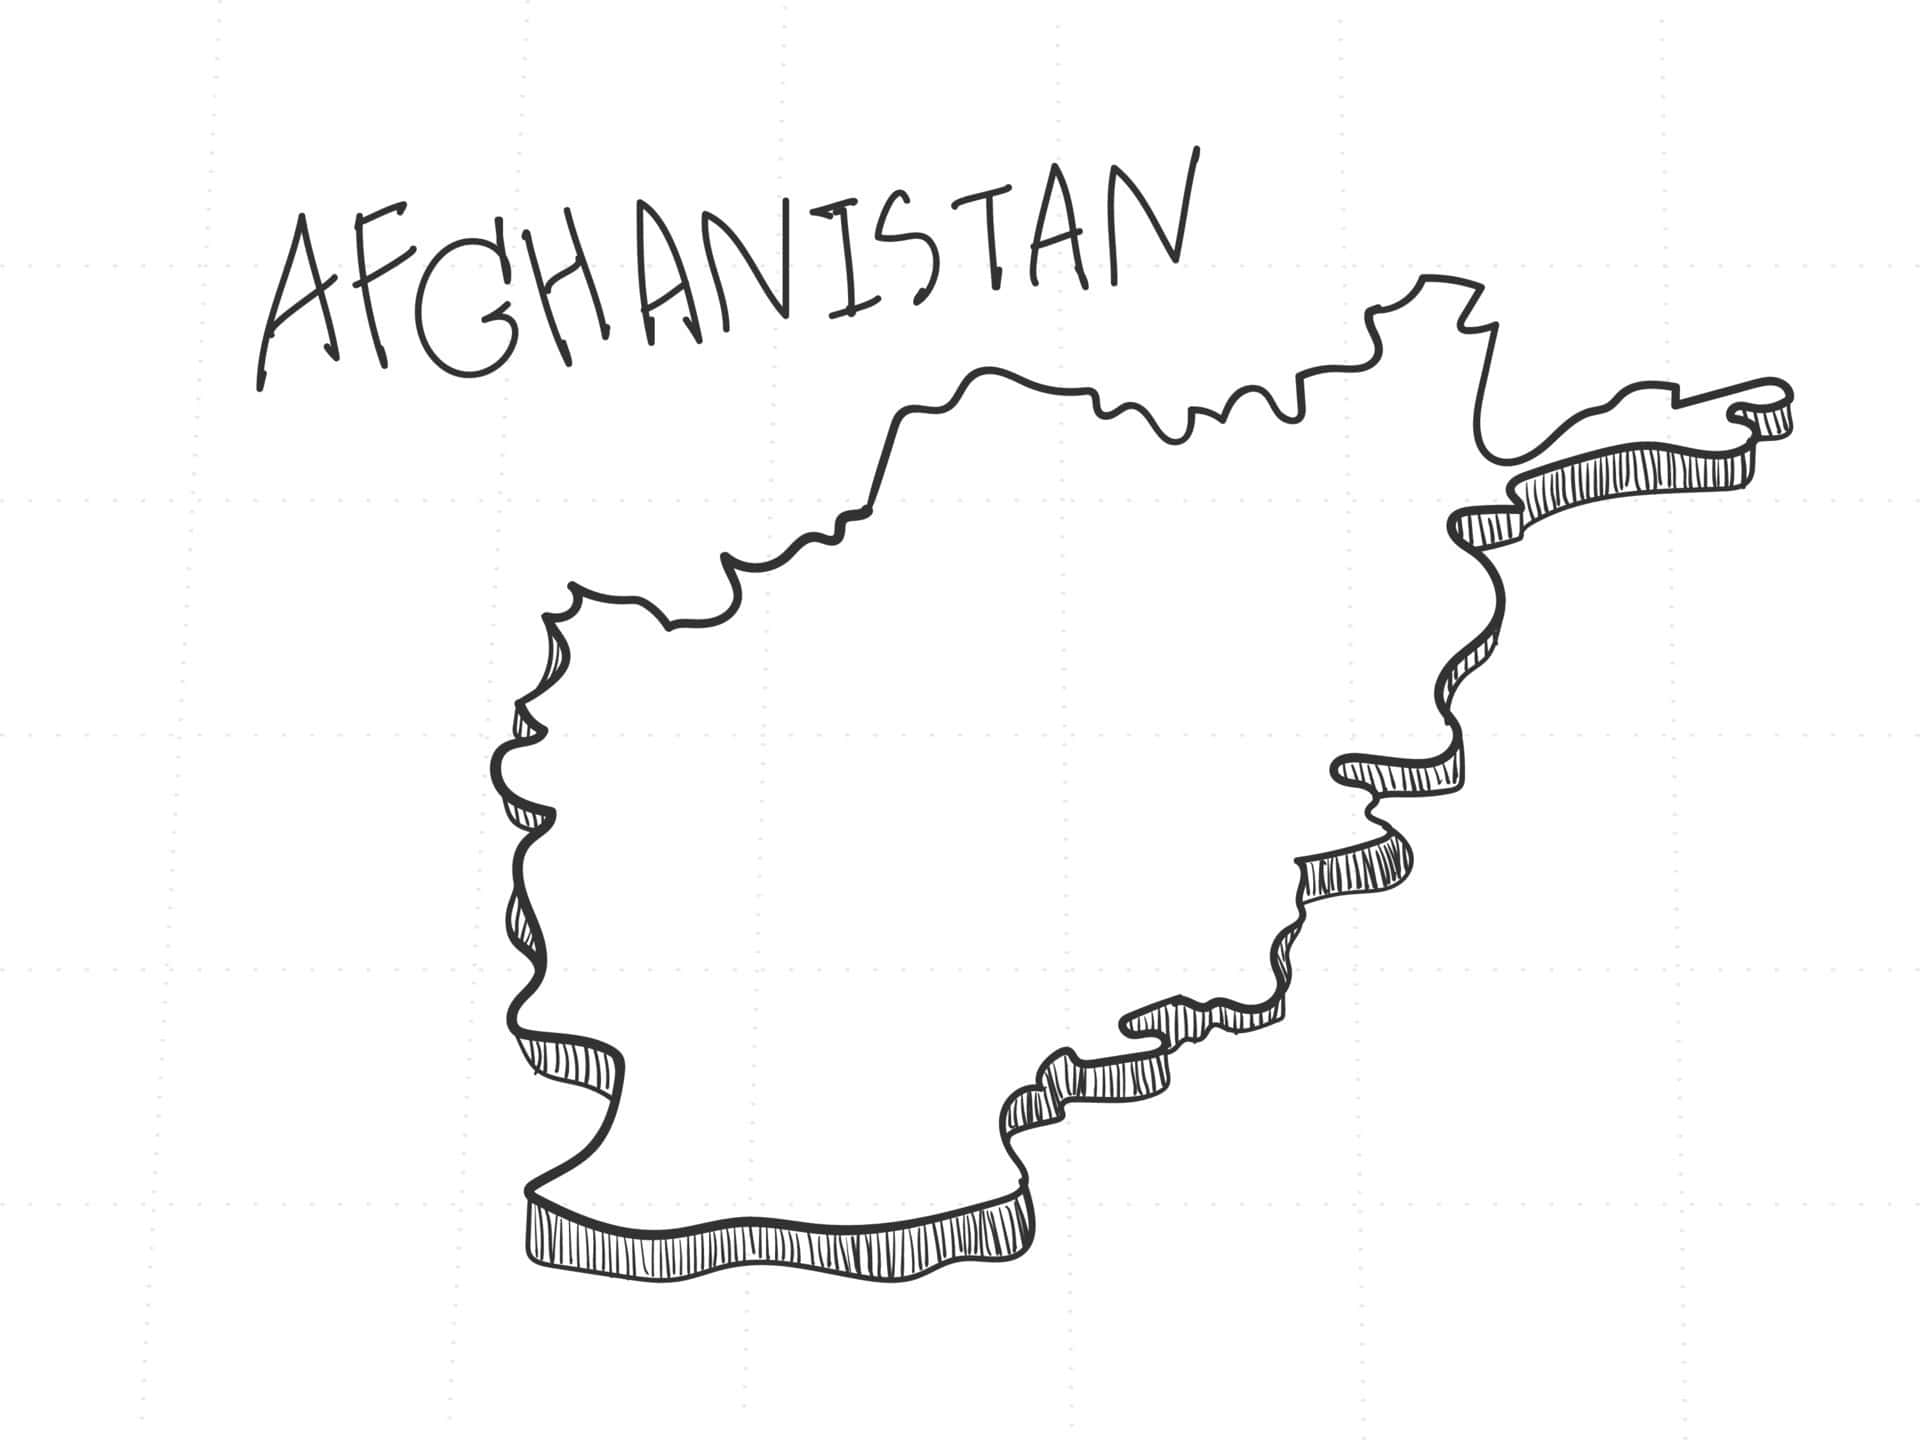 Hintergrundvon Afghanistan